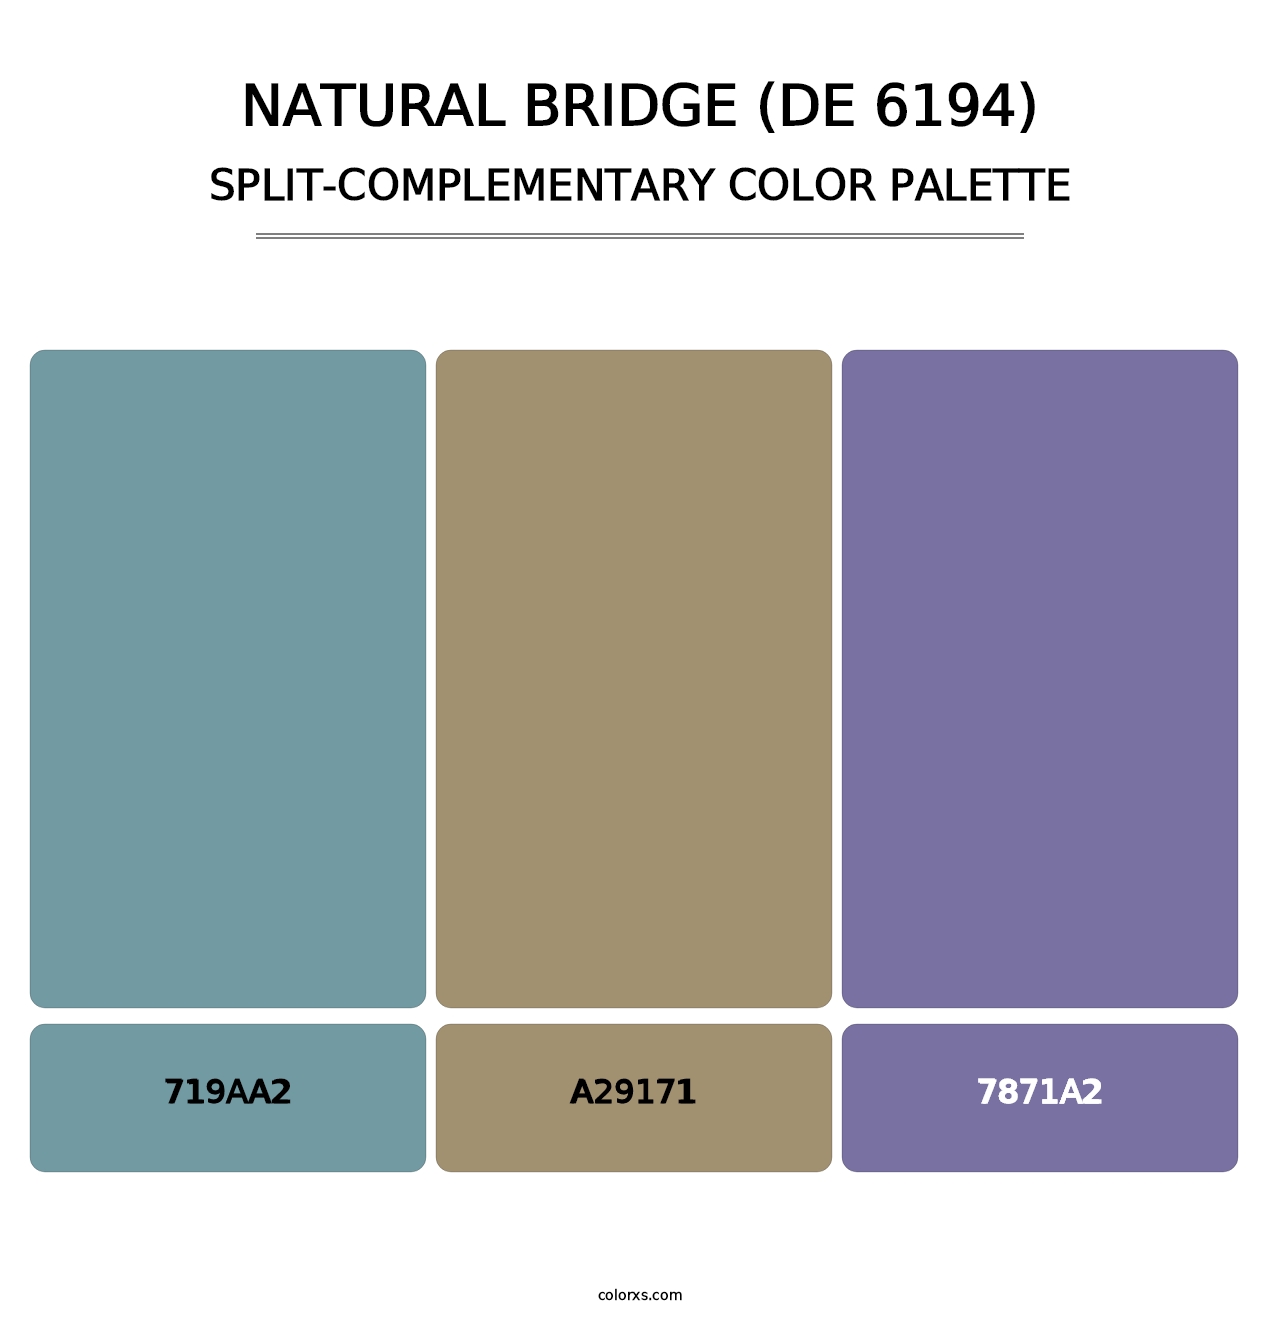 Natural Bridge (DE 6194) - Split-Complementary Color Palette